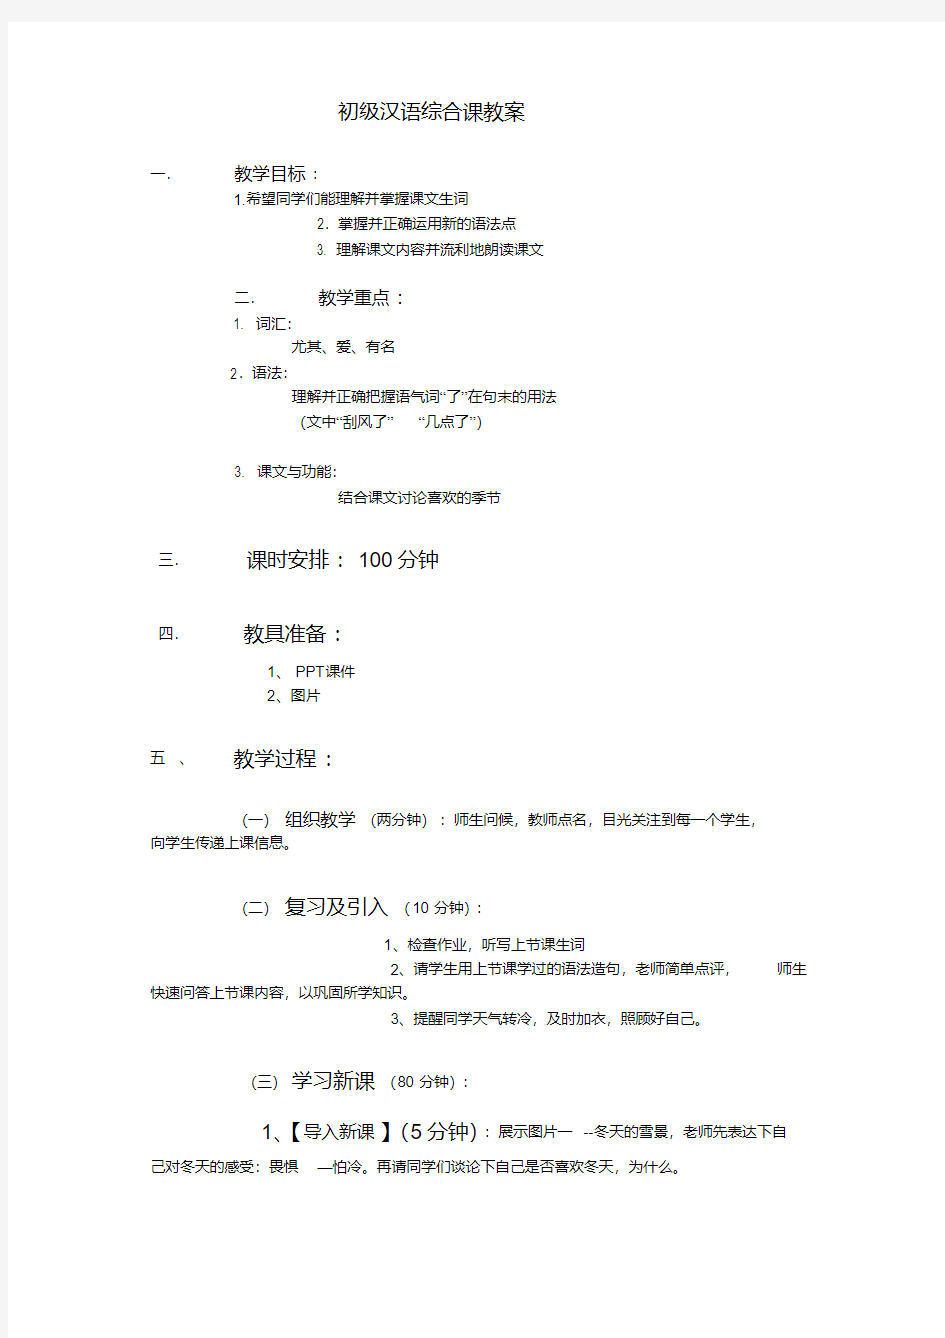 对外汉语综合课教案(初级).pdf